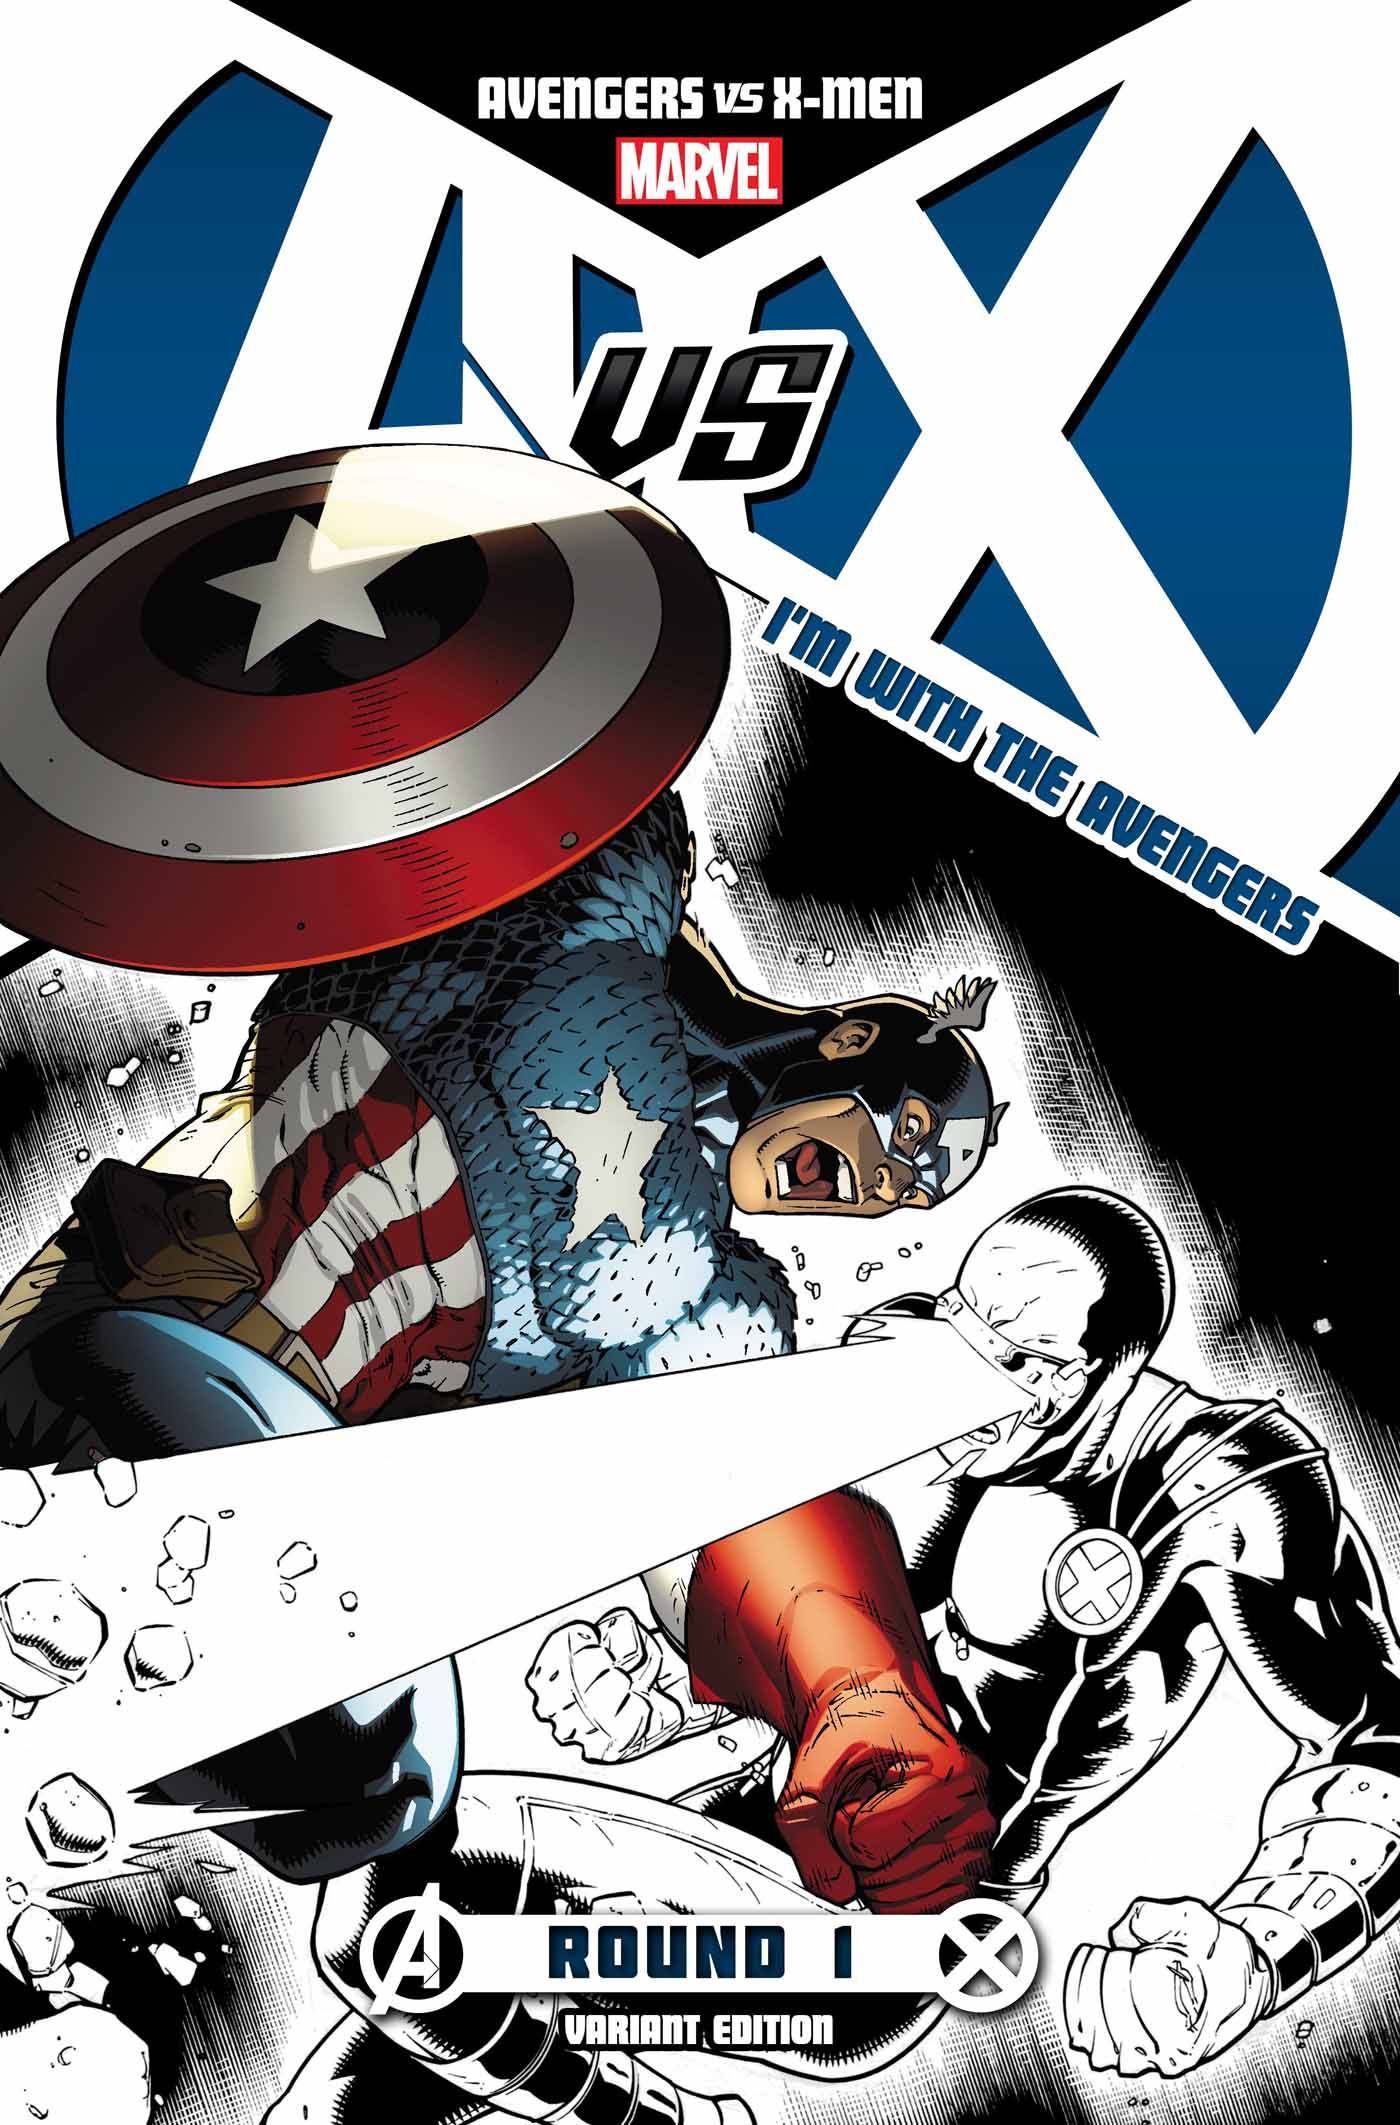 Avengers Vs X-Men #1 Avengers Team Store Variant